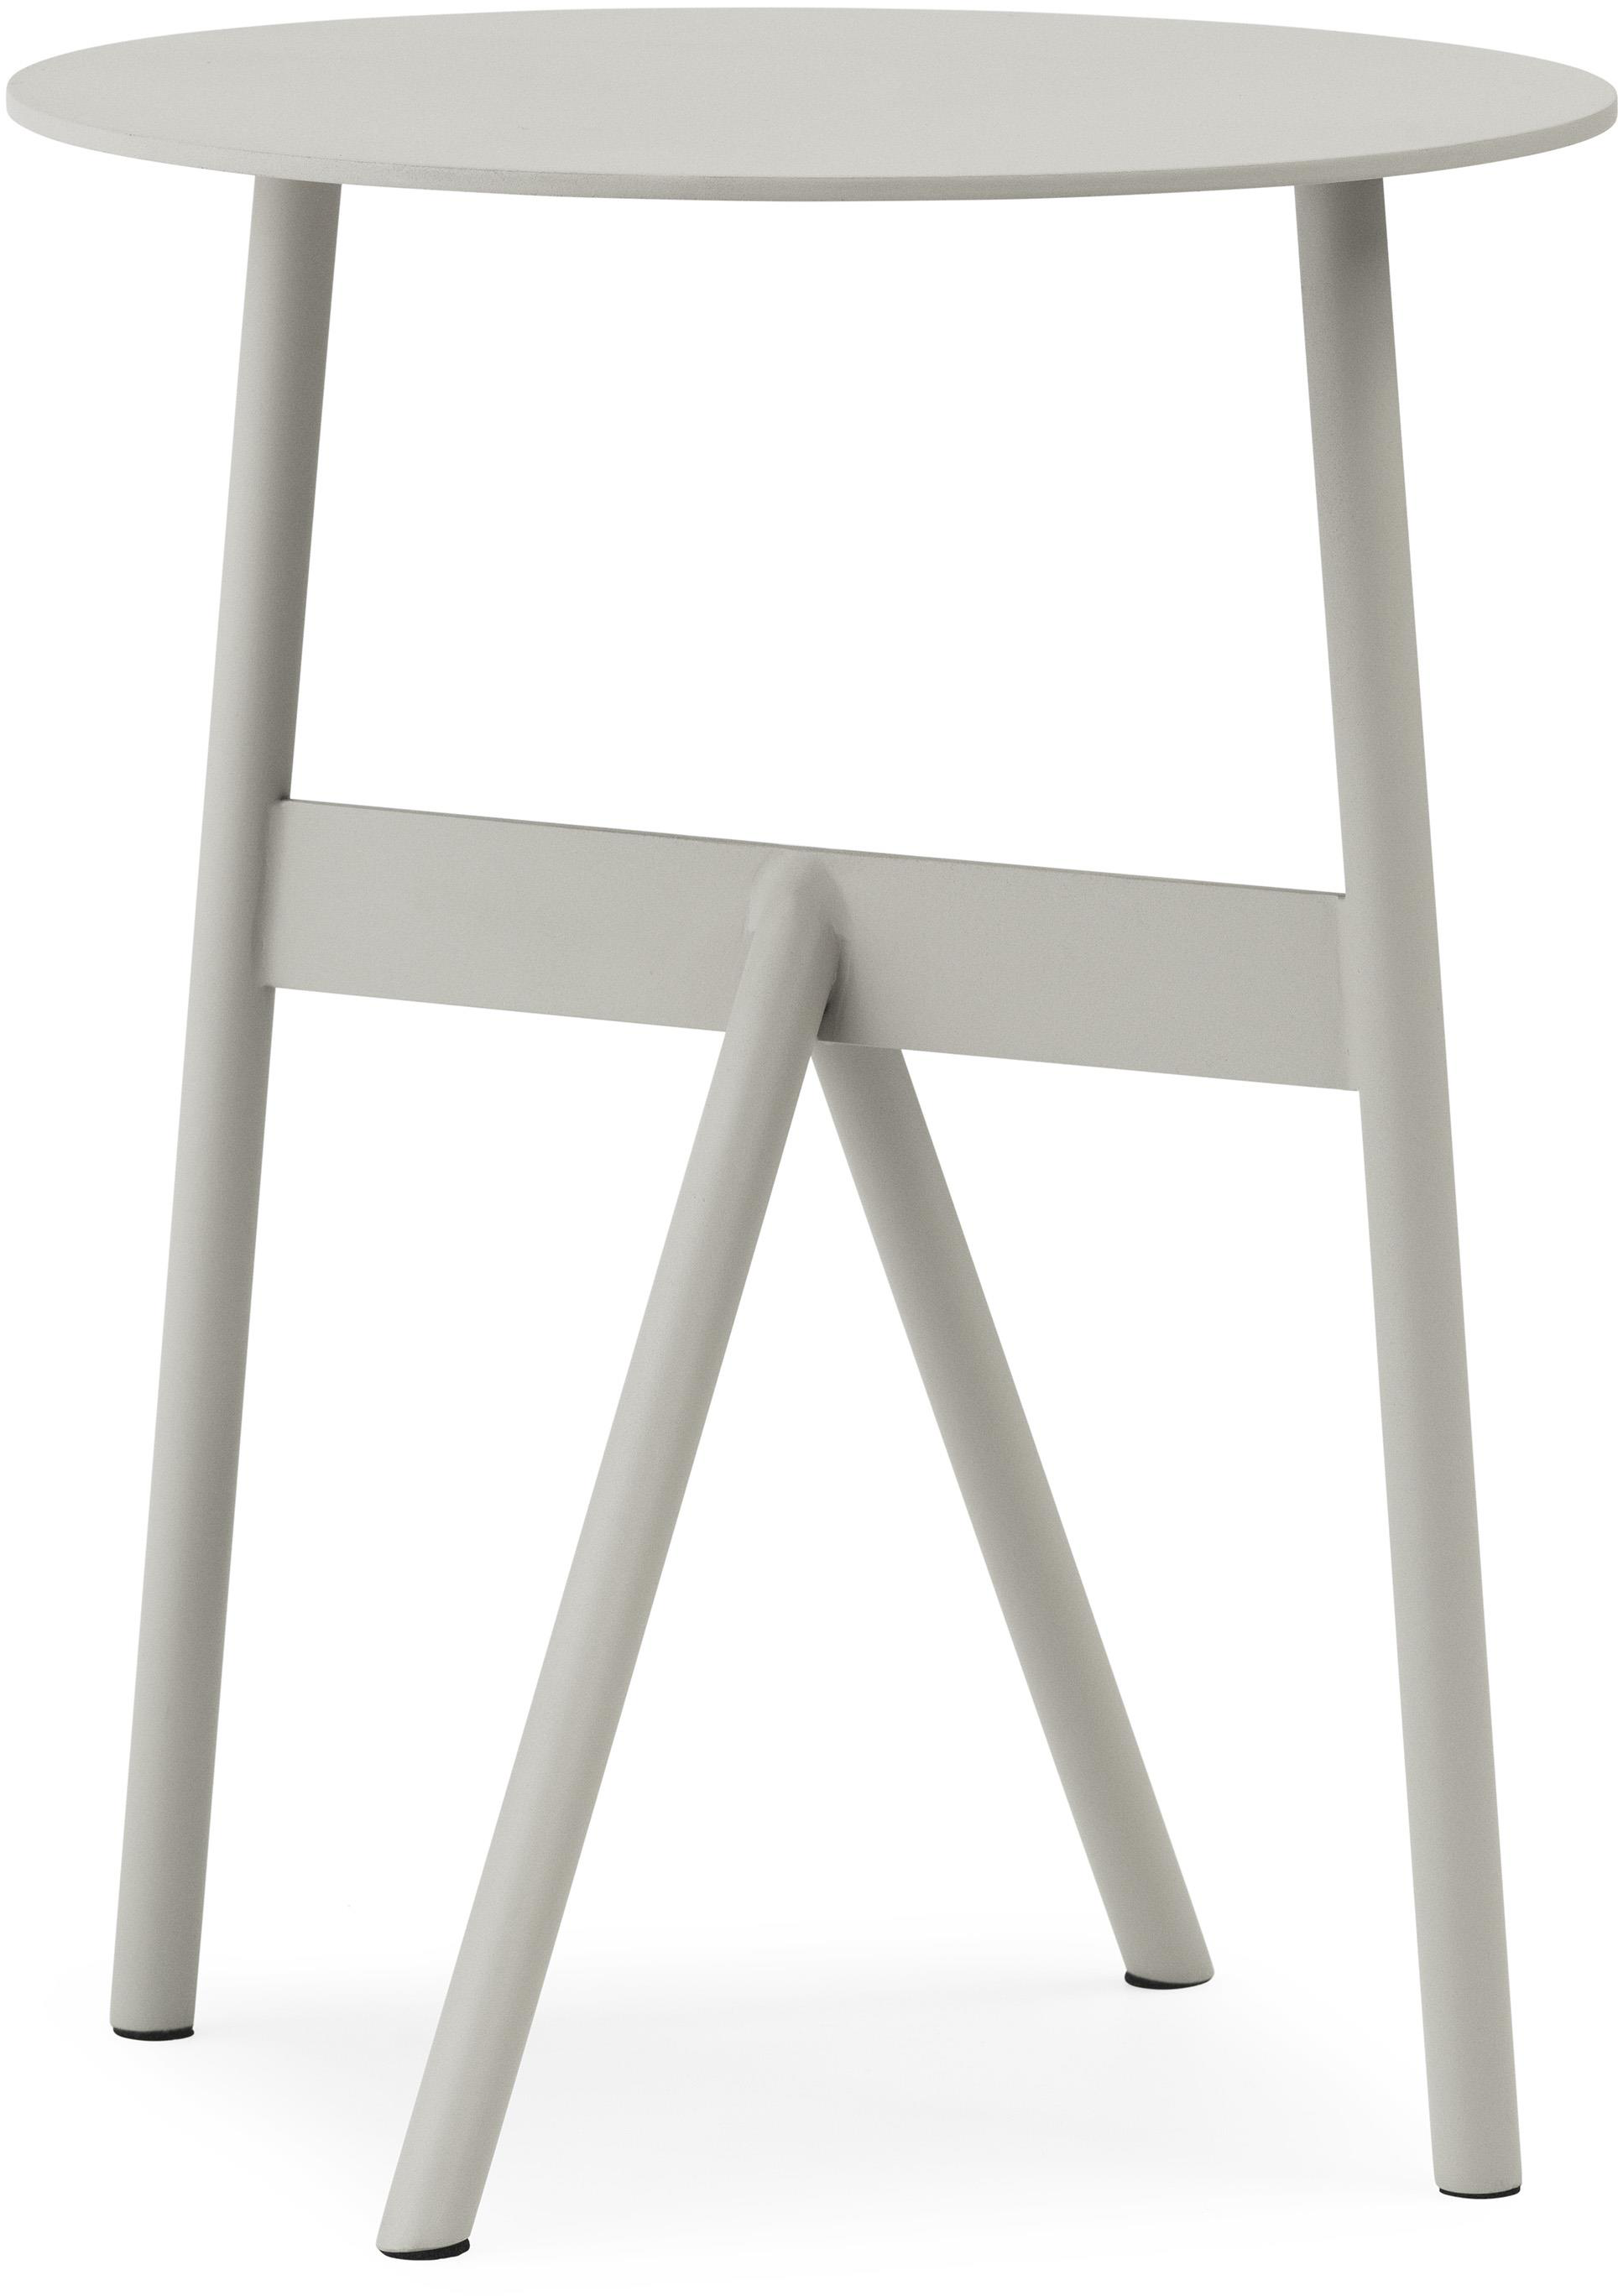 Stock Beistelltisch in Warm Grey präsentiert im Onlineshop von KAQTU Design AG. Beistelltisch ist von Normann Copenhagen